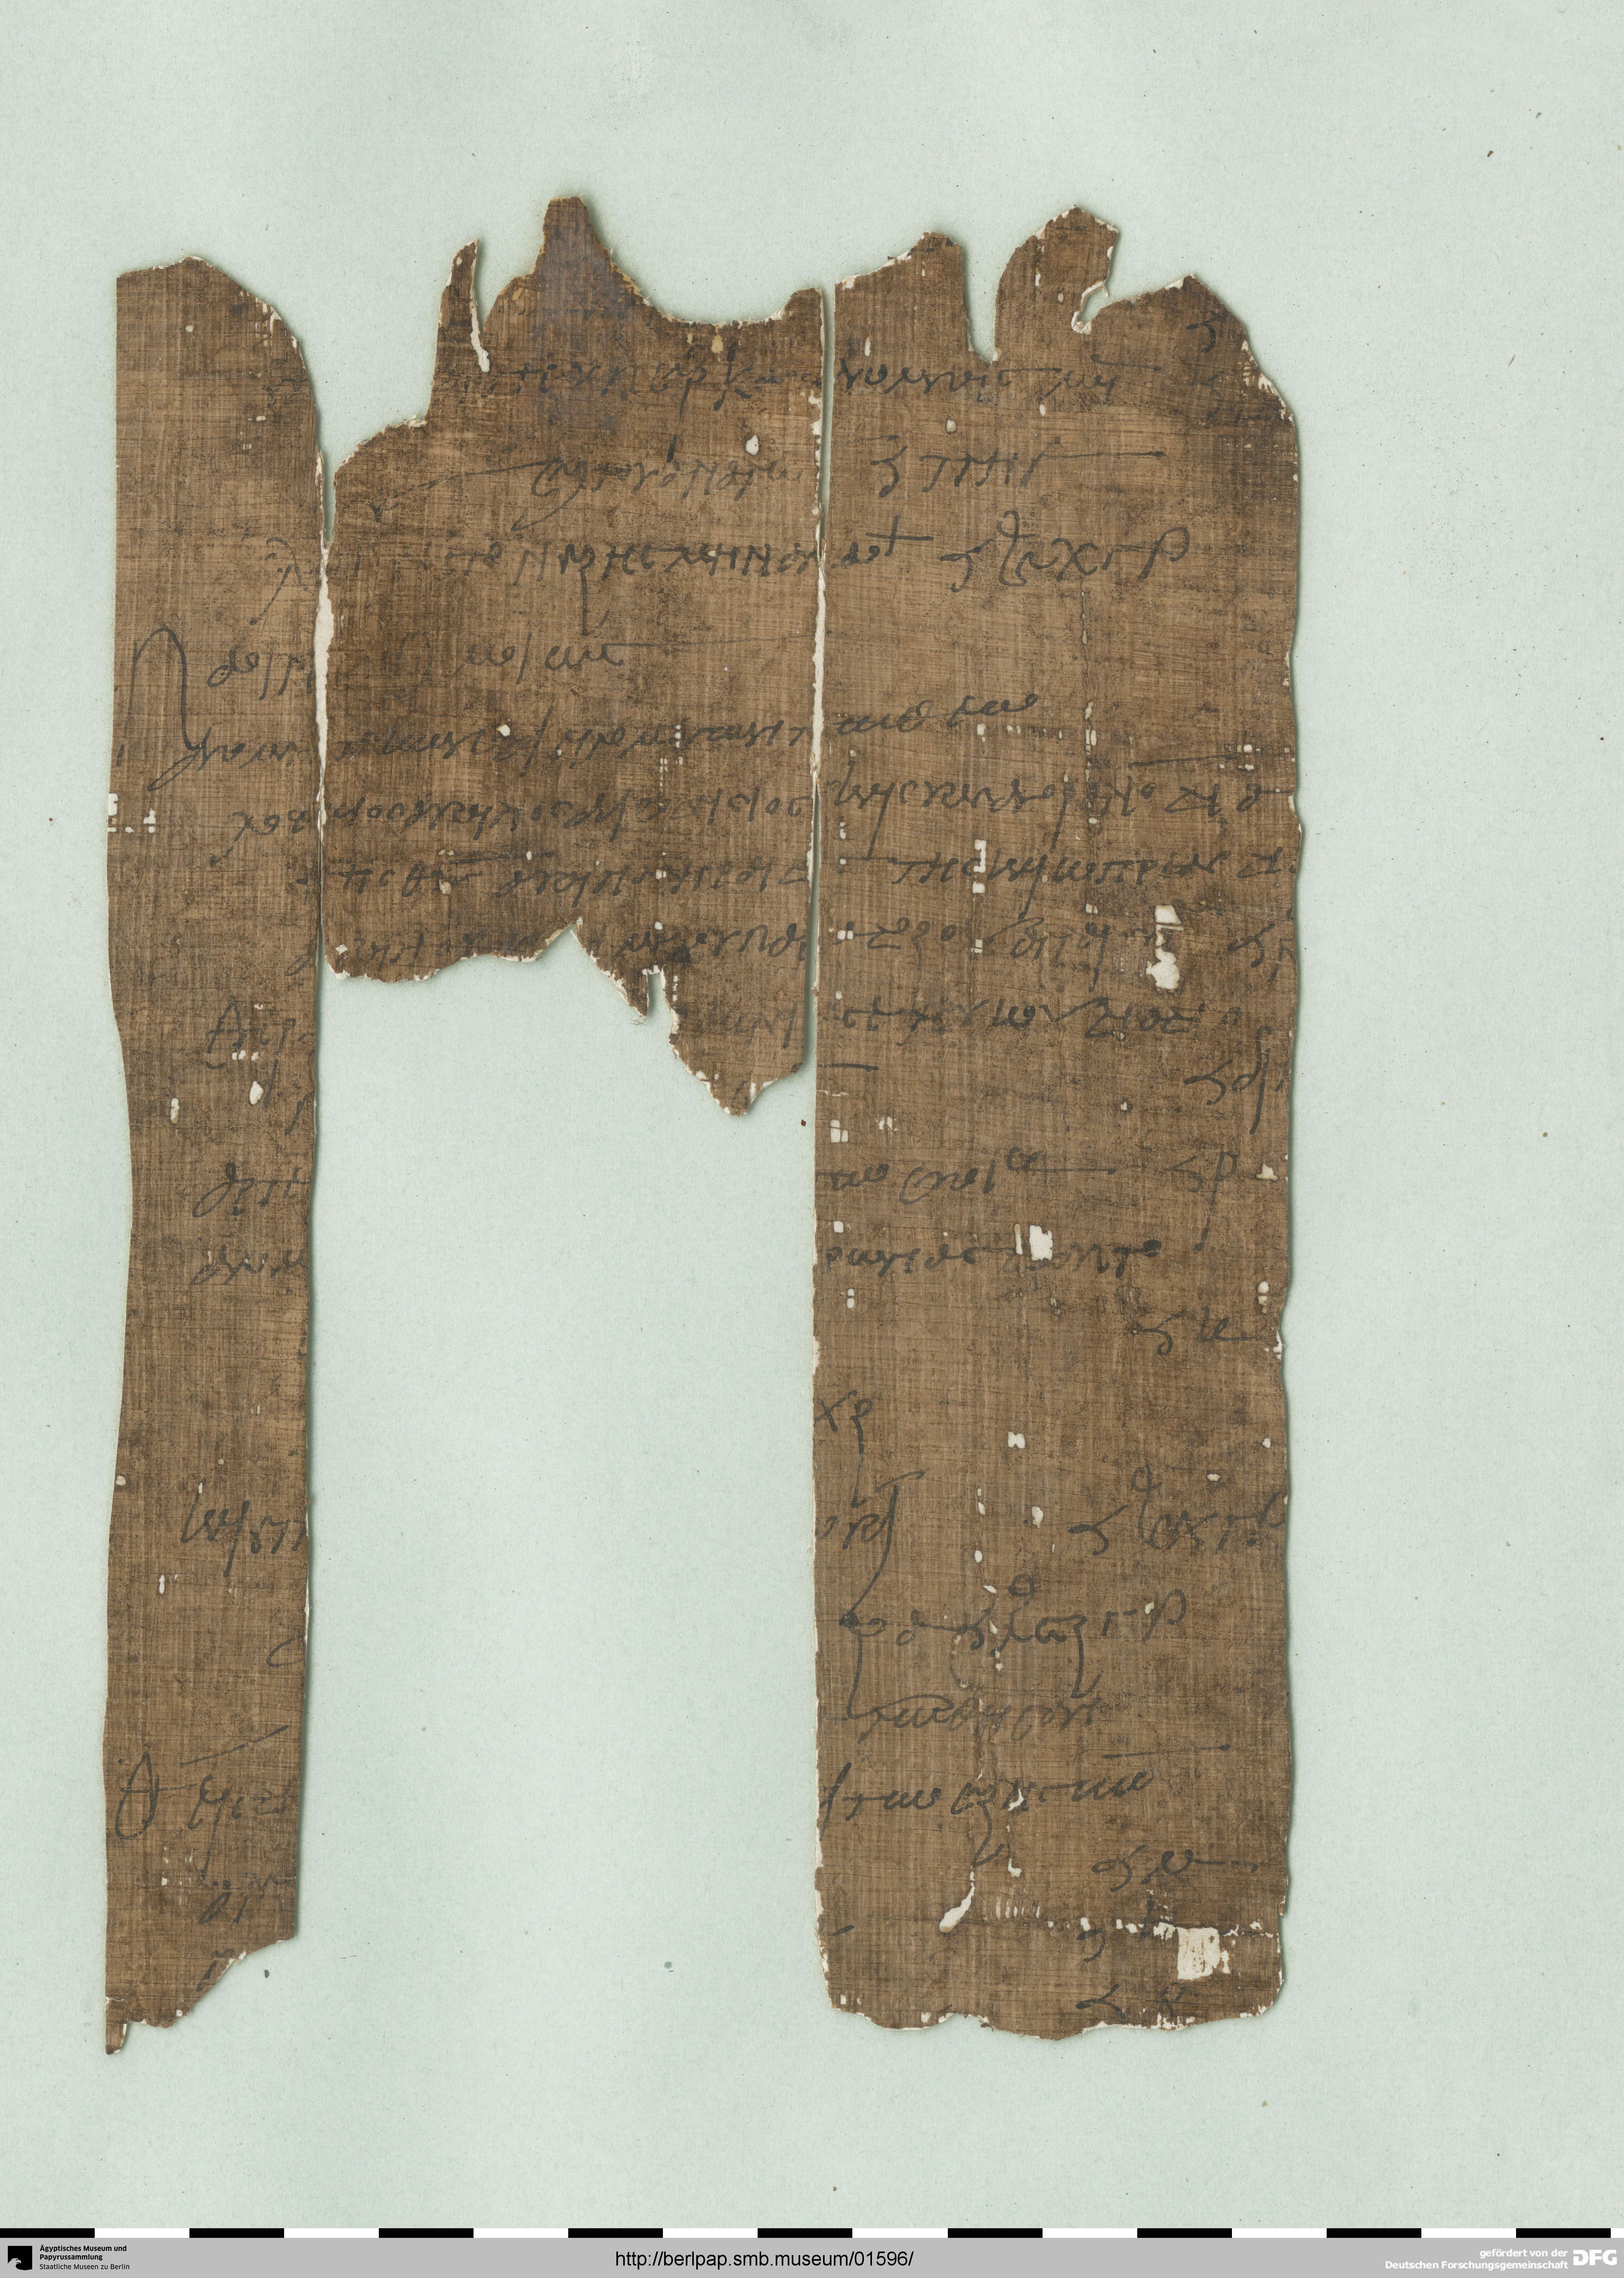 http://berlpap.smb.museum/Original/P_05092_R_001.jpg (Ägyptisches Museum und Papyrussammlung, Staatliche Museen zu Berlin CC BY-NC-SA)